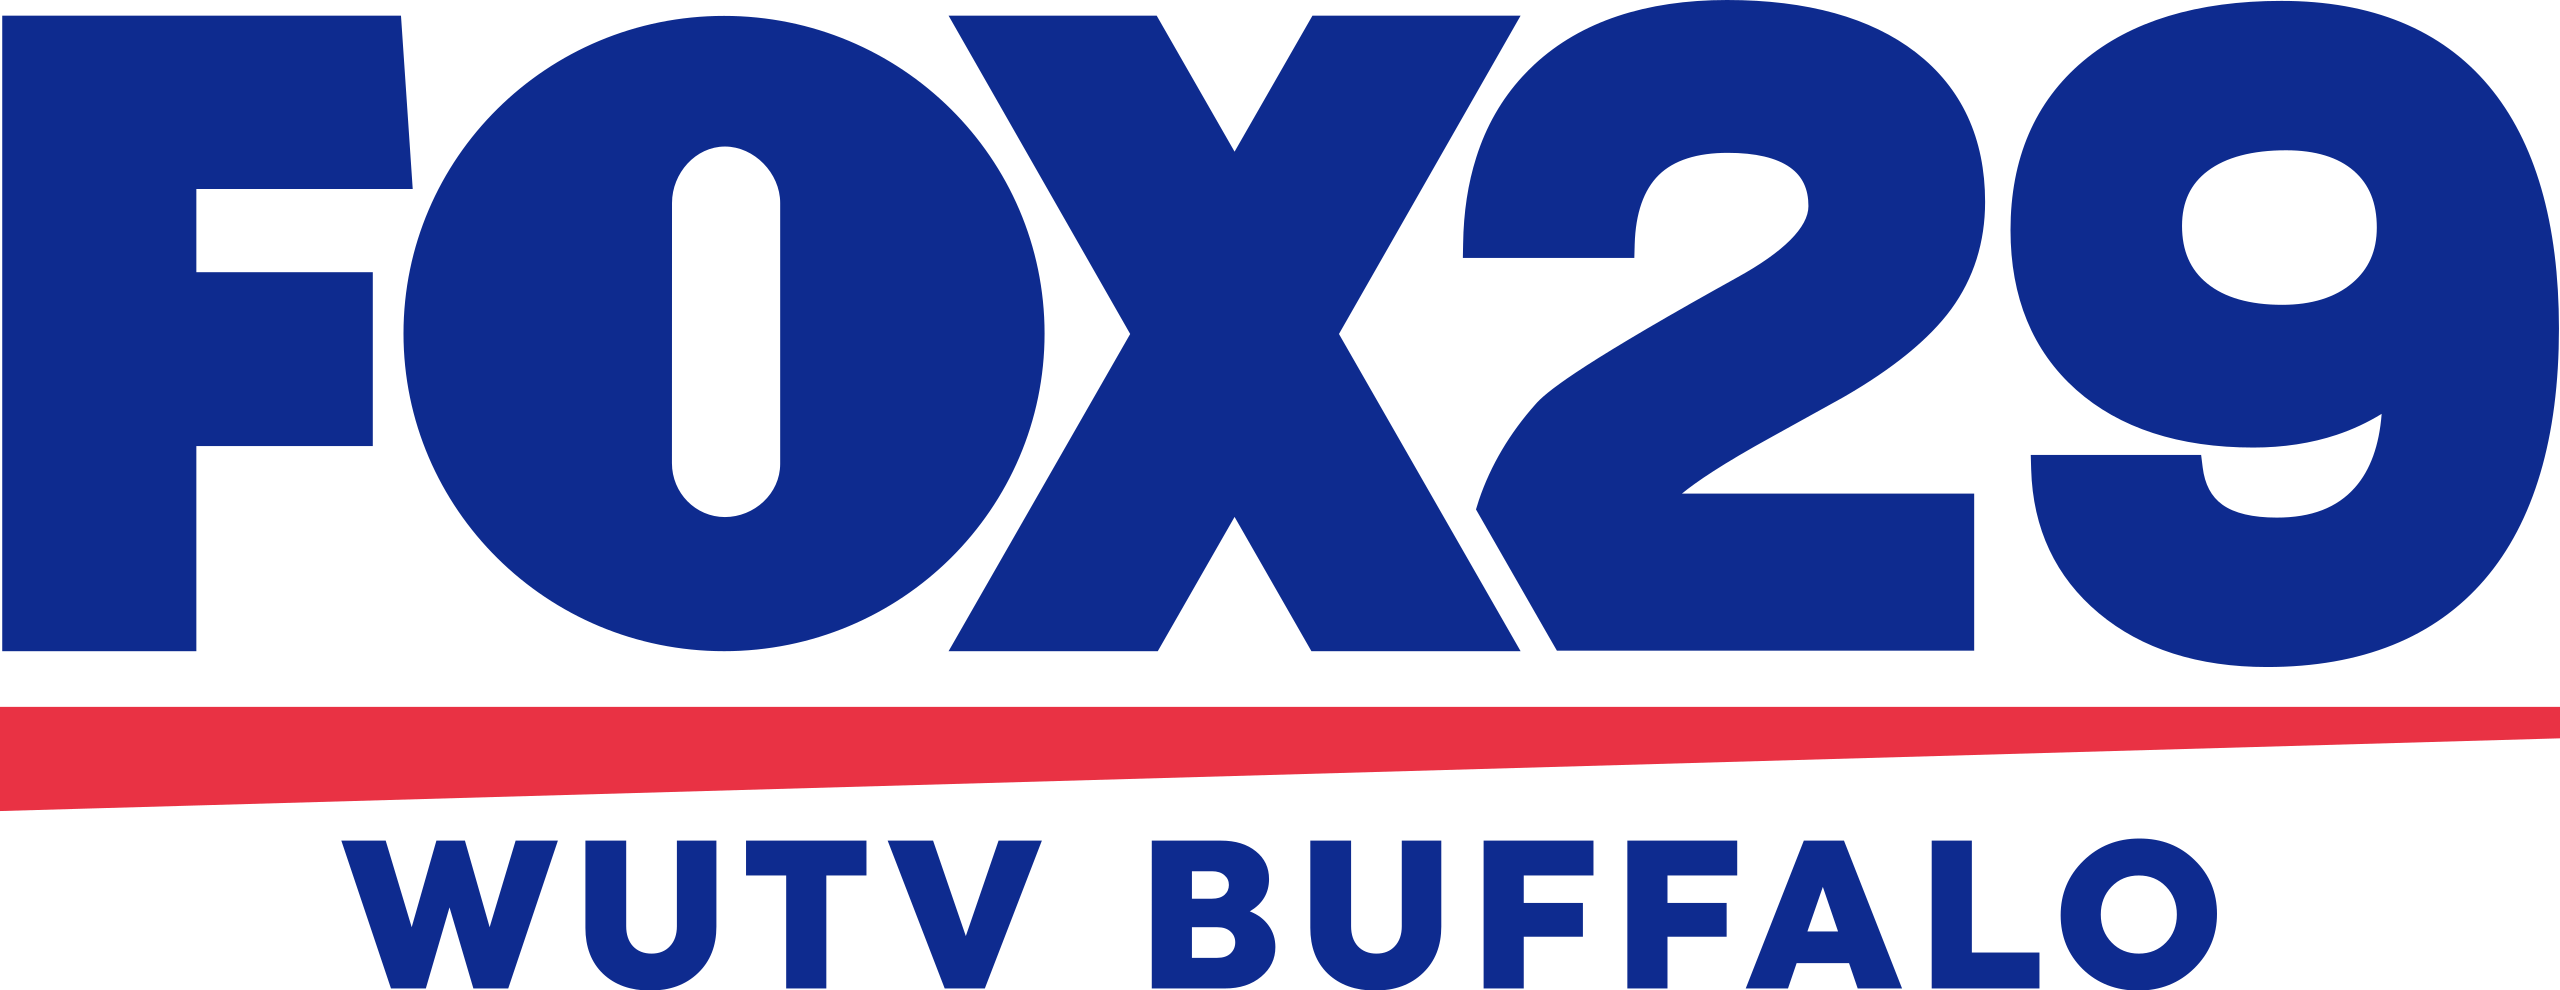 FOX 29 Buffalo